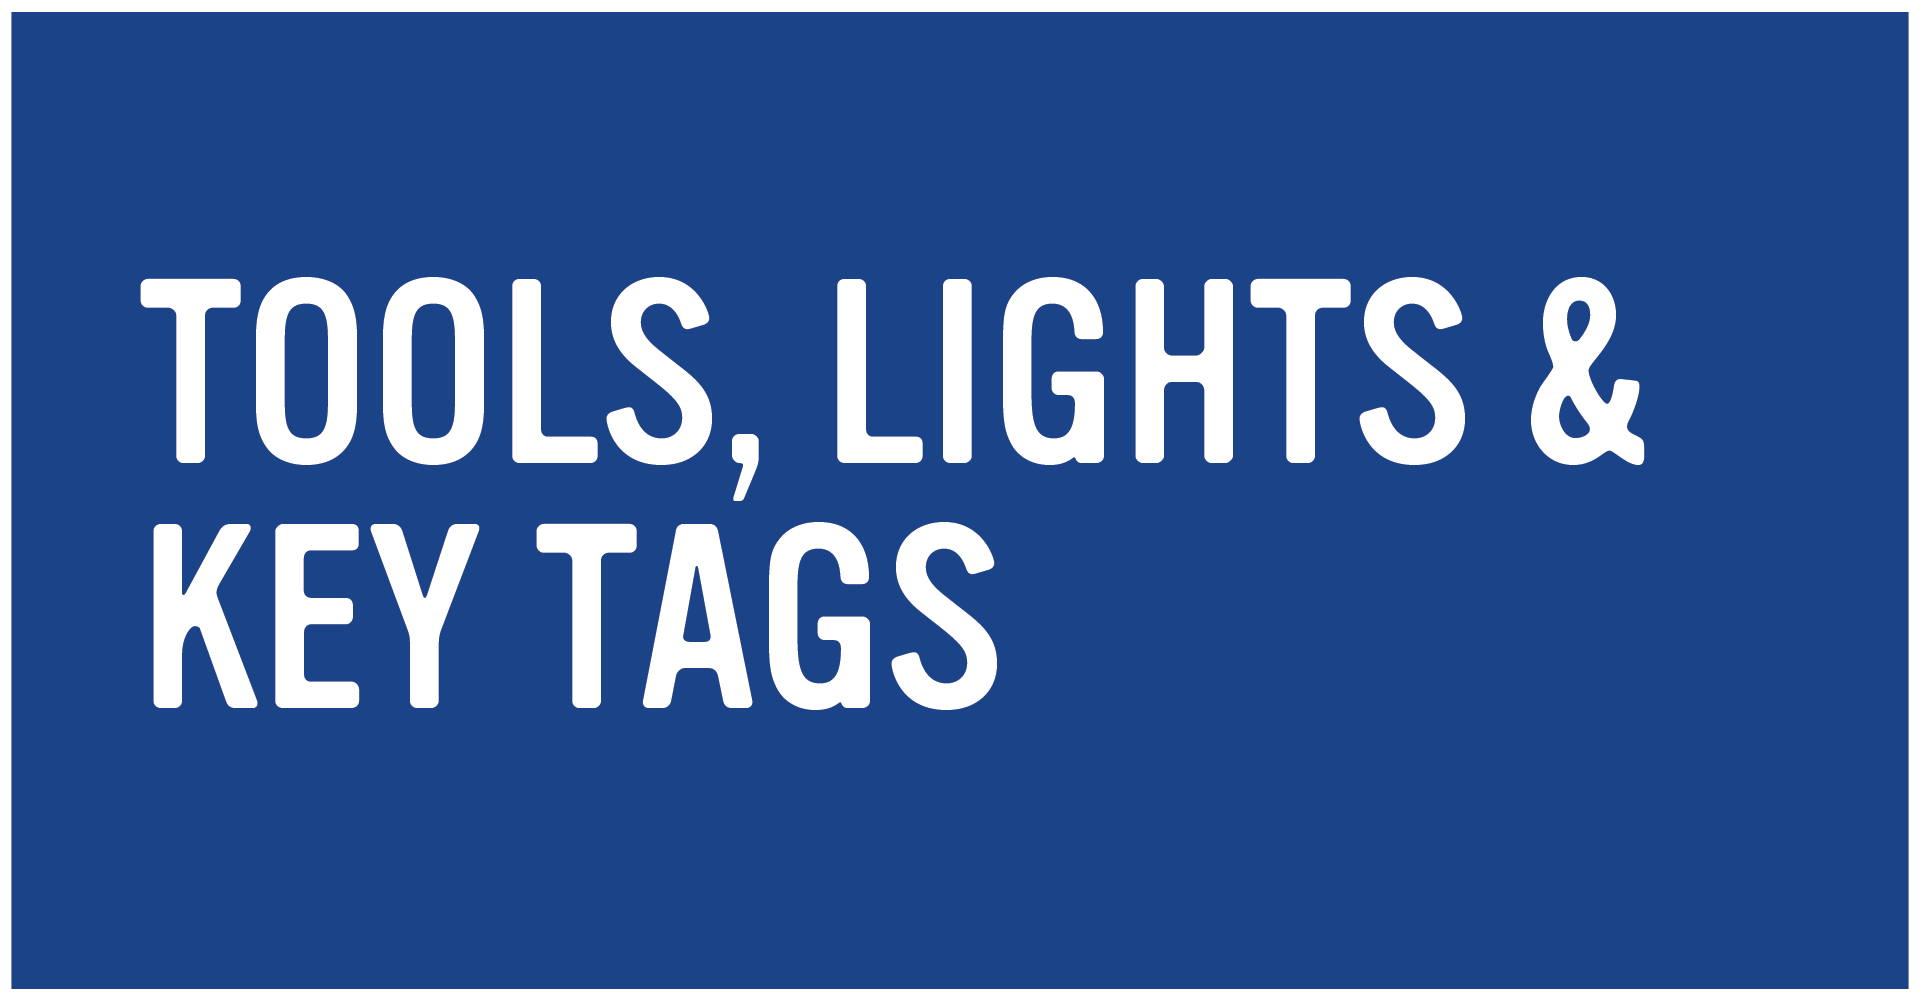 Tools, Lights & Key Tags